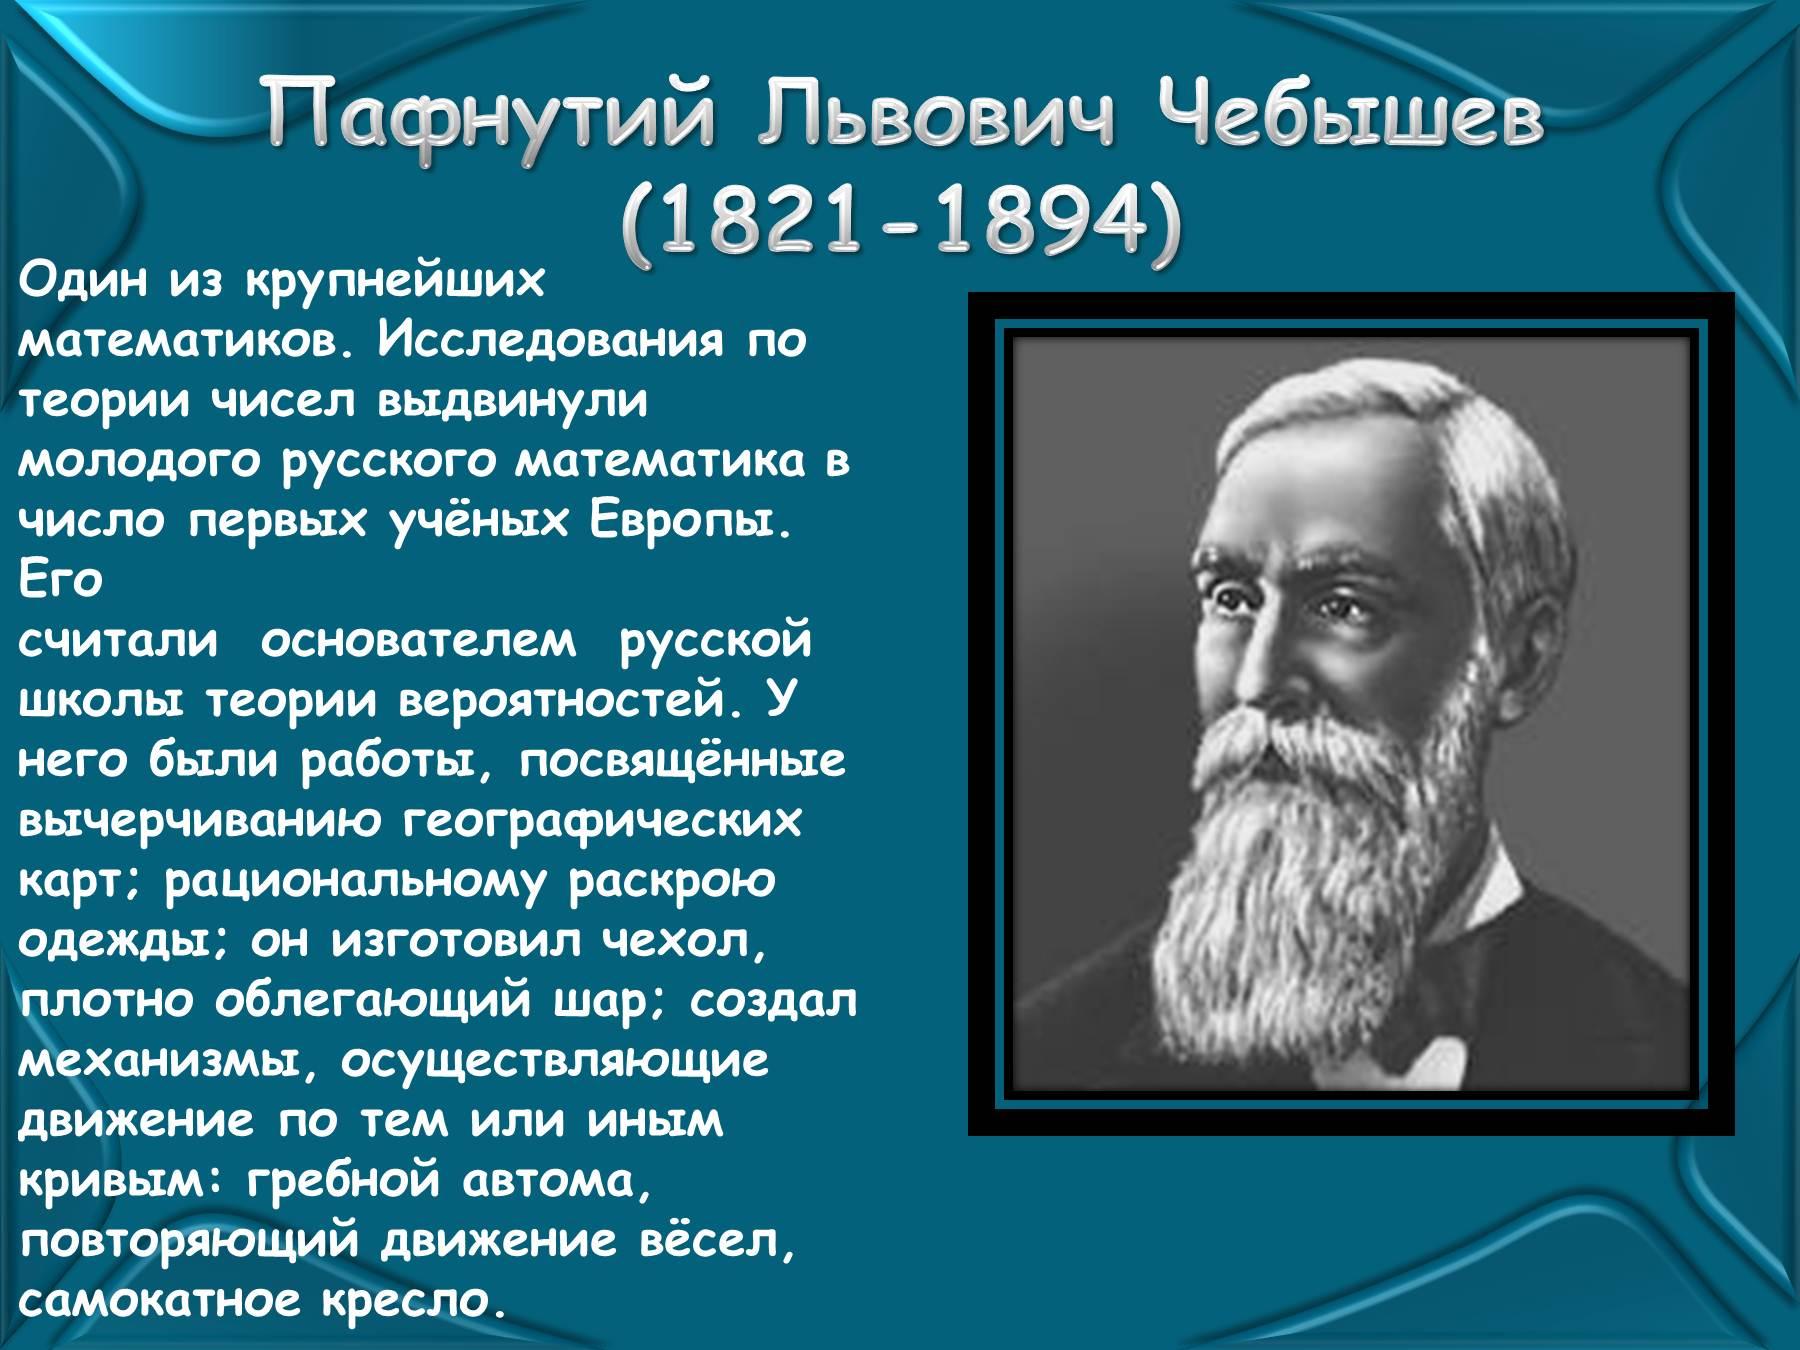 Пафнутий Львович Чебышев (1821-1894)